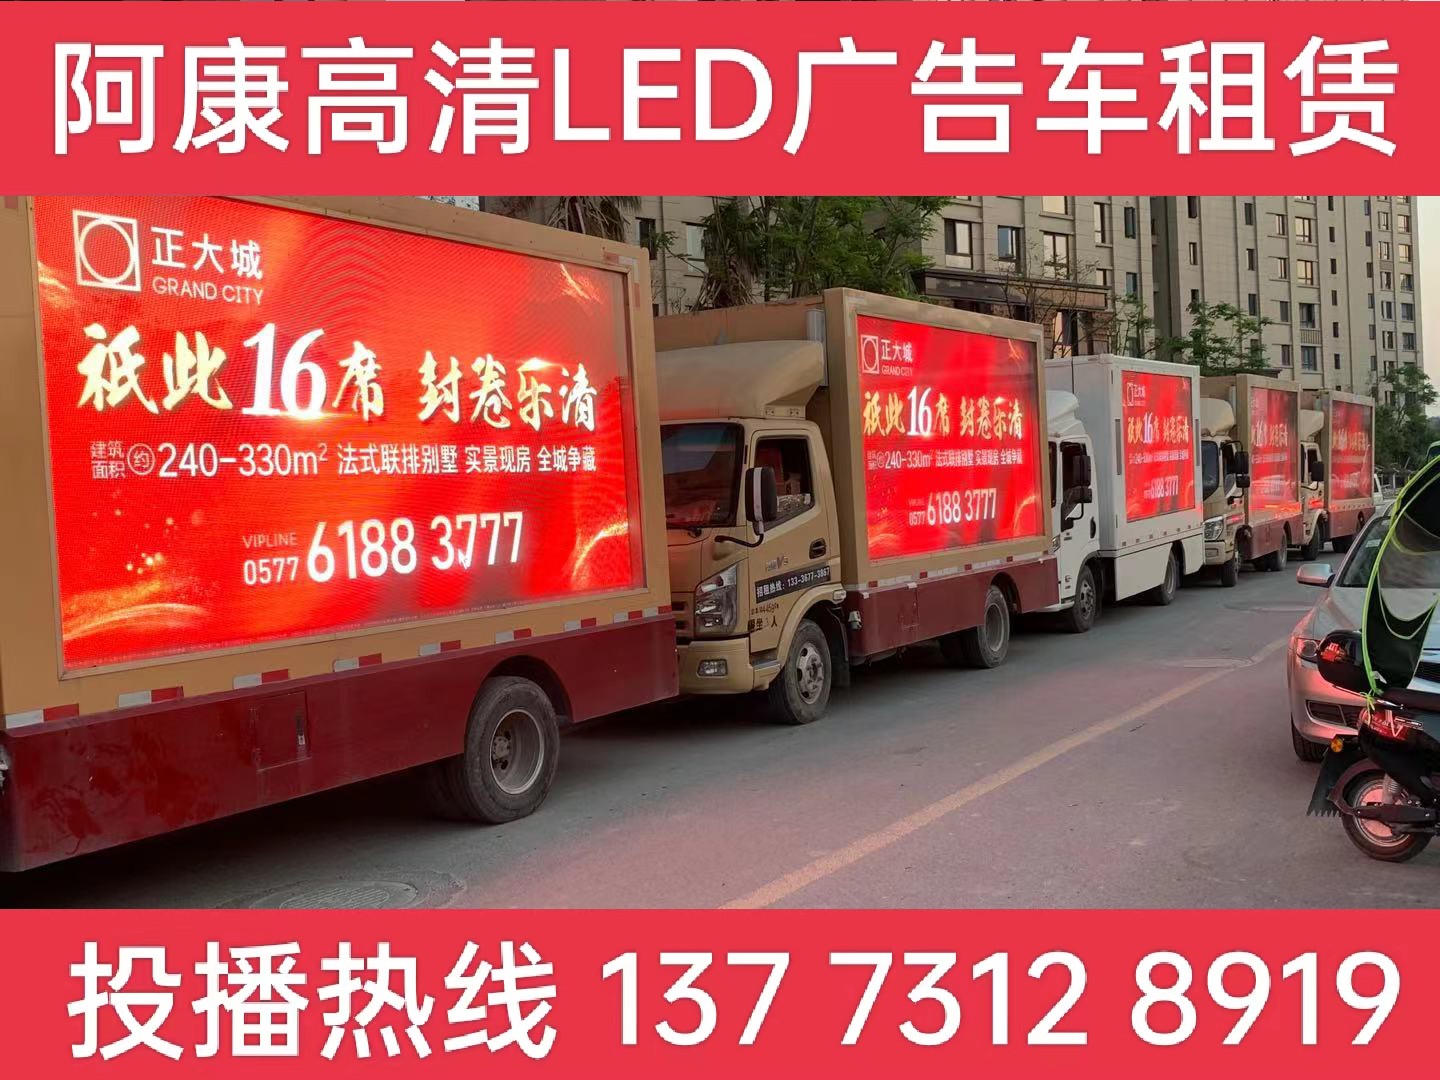 吴江LED广告车出租